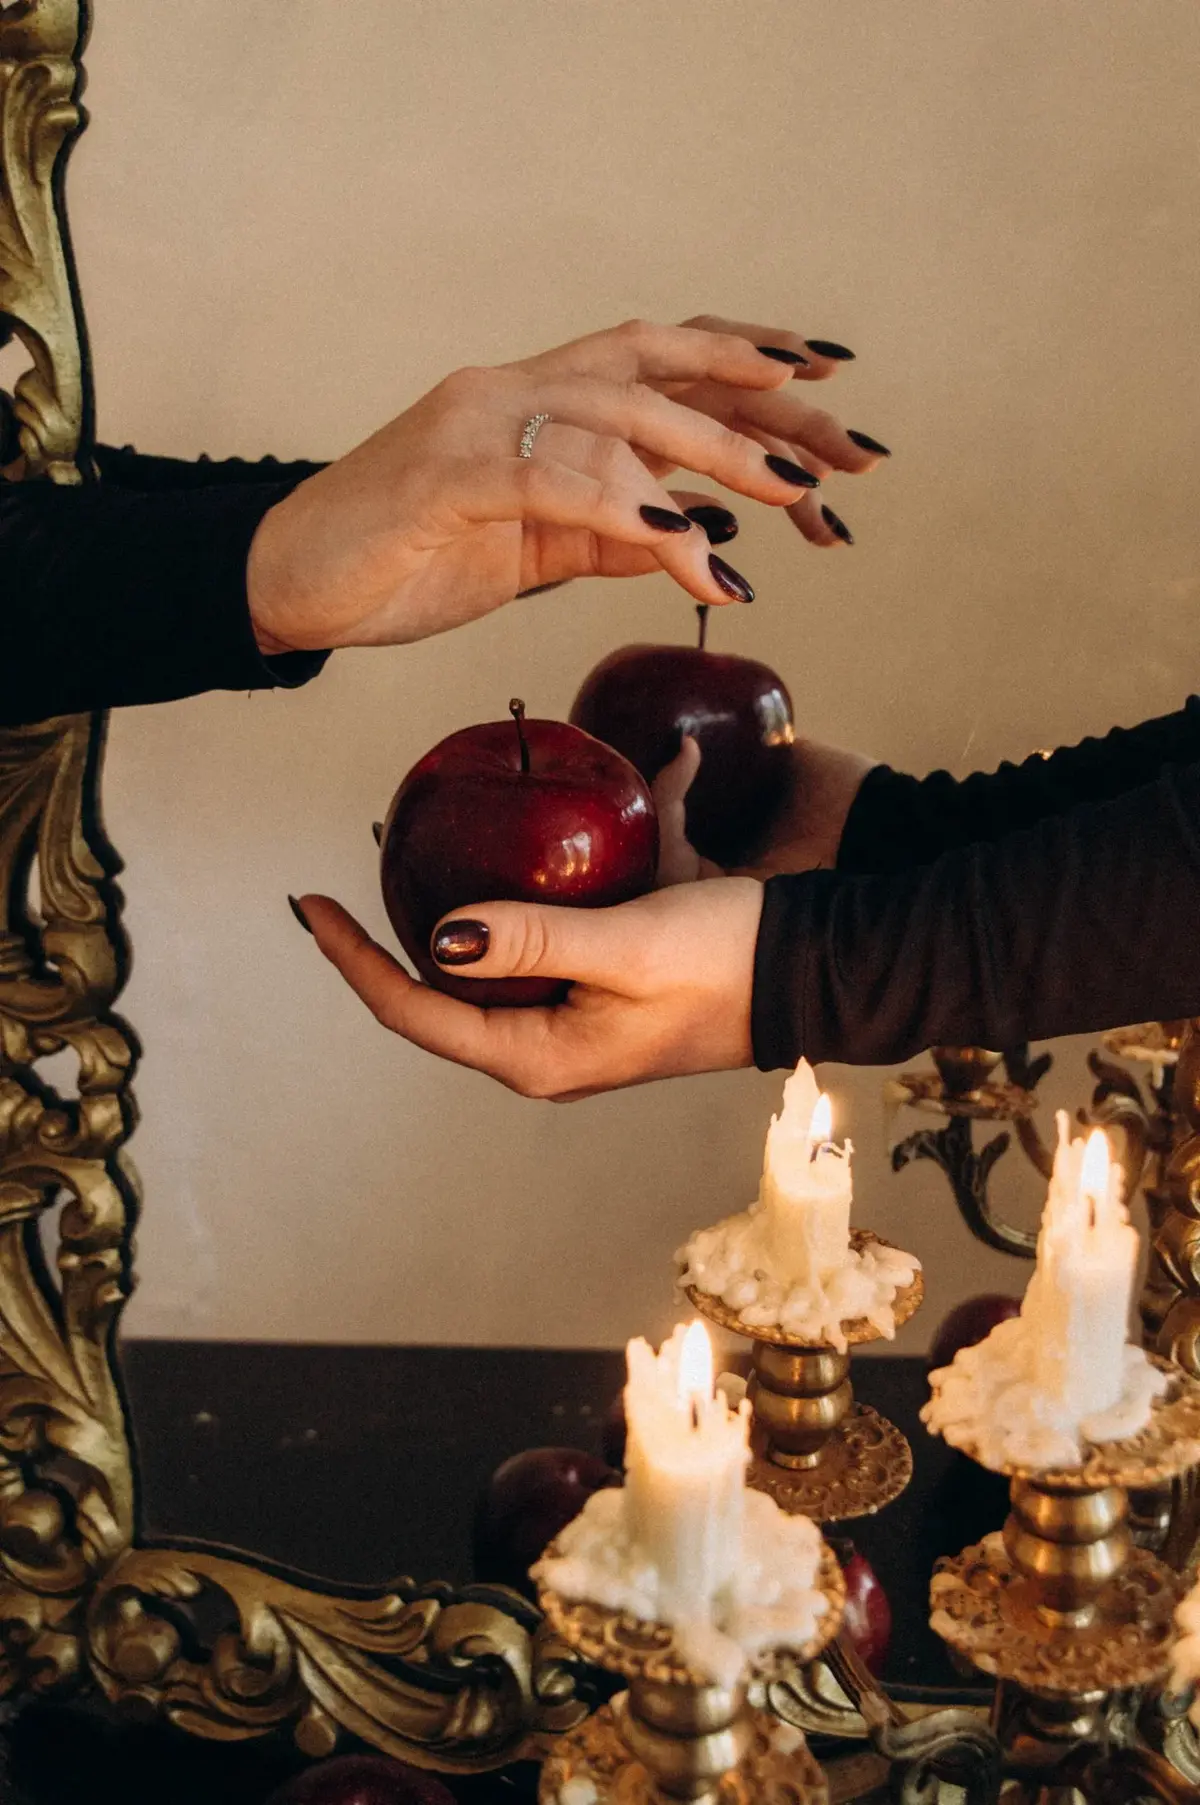 Kobiece dłonie trzymające w garści bordowe jabłka na tle kobiecych dłoni i świeczek